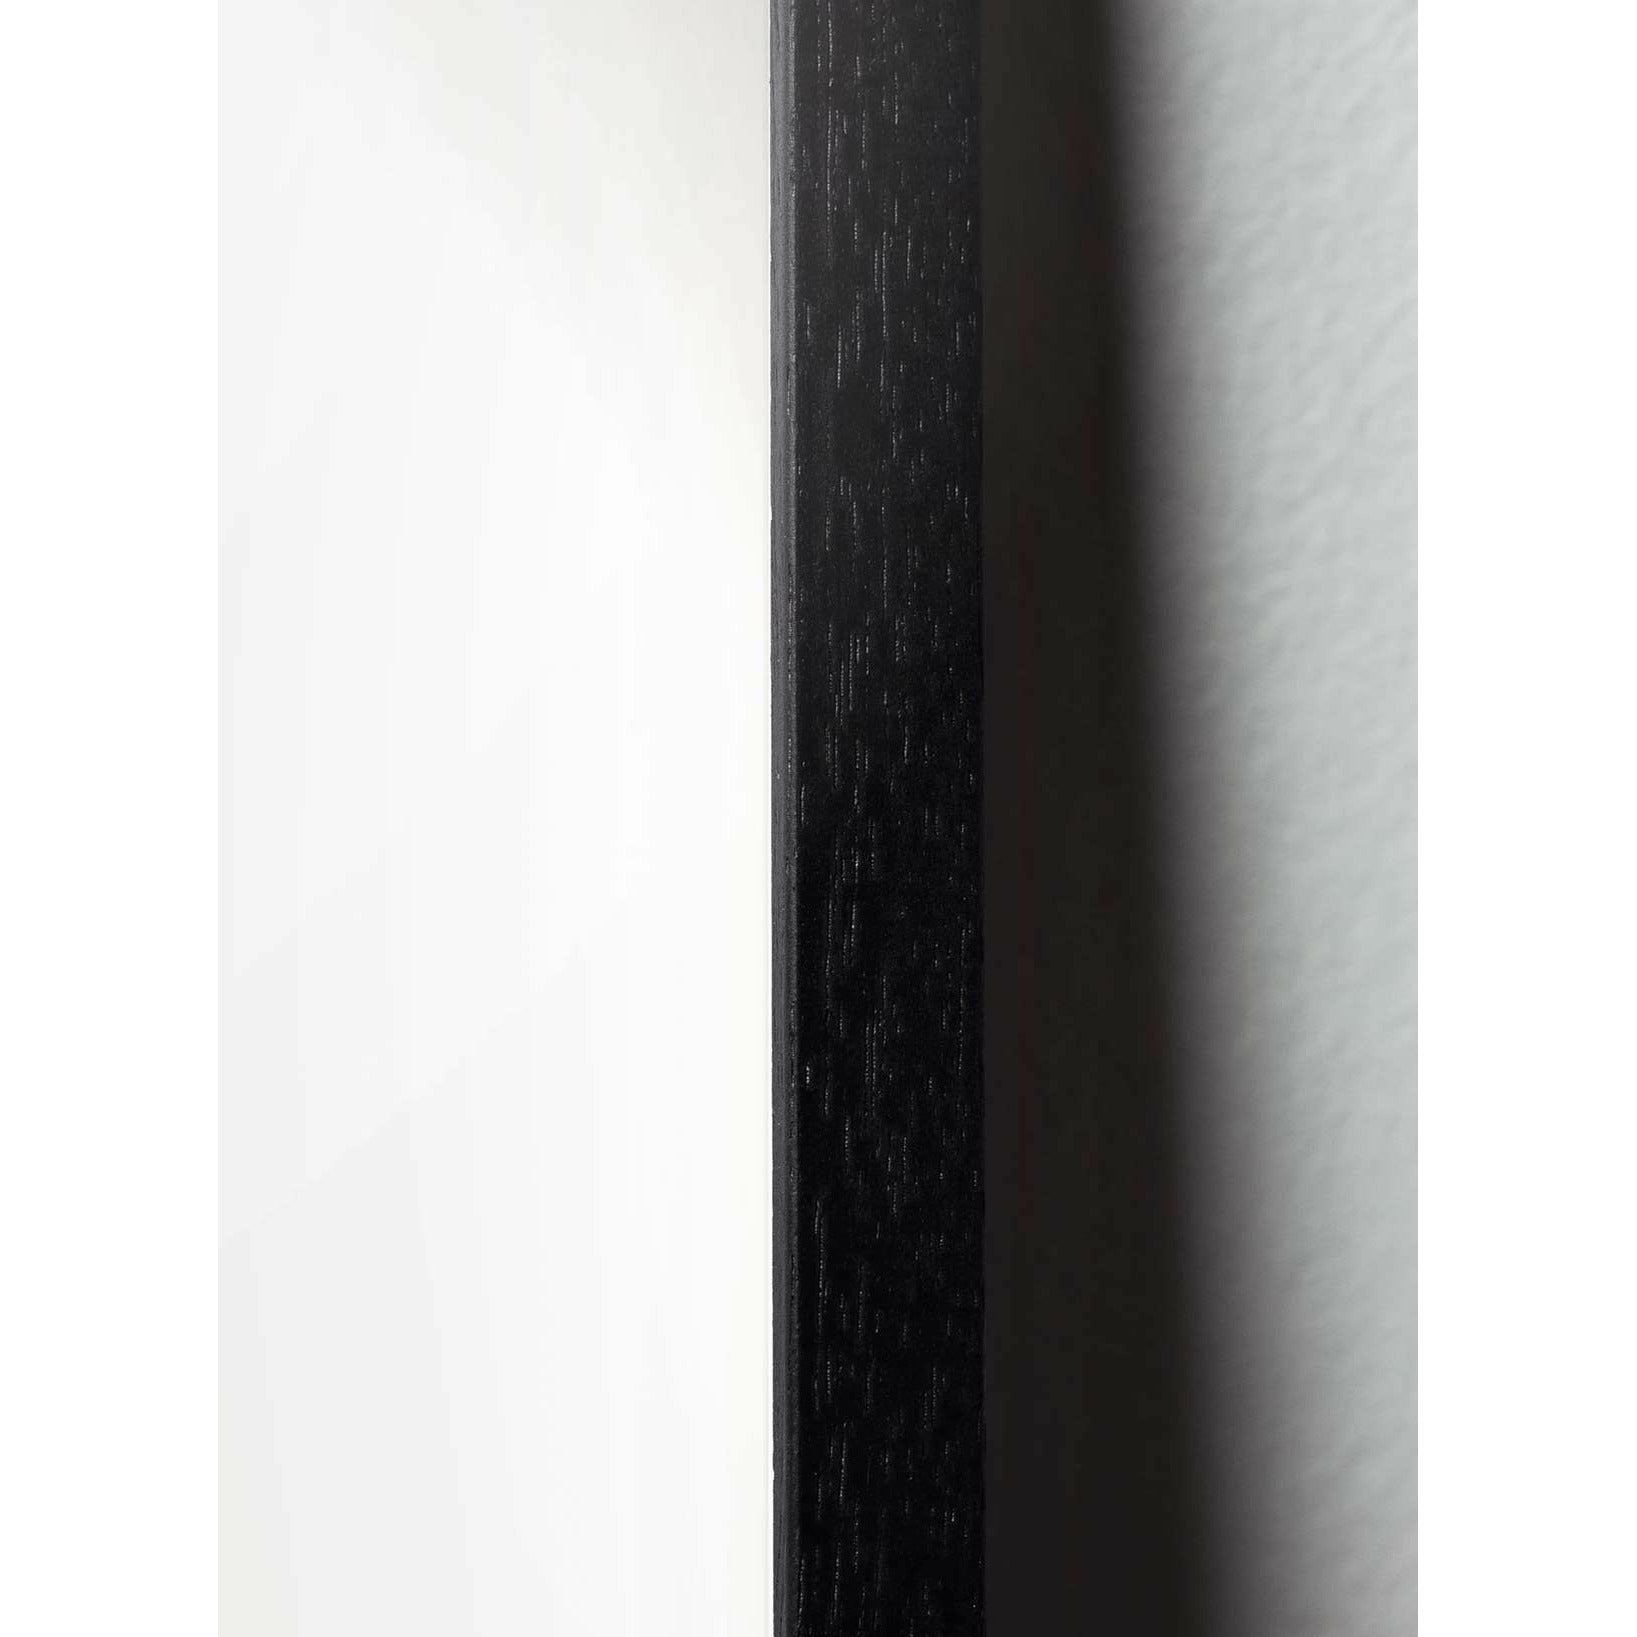 Pomysły Pine Classic Plakat, rama w czarnym lakierowanym drewnie A5, białe tło